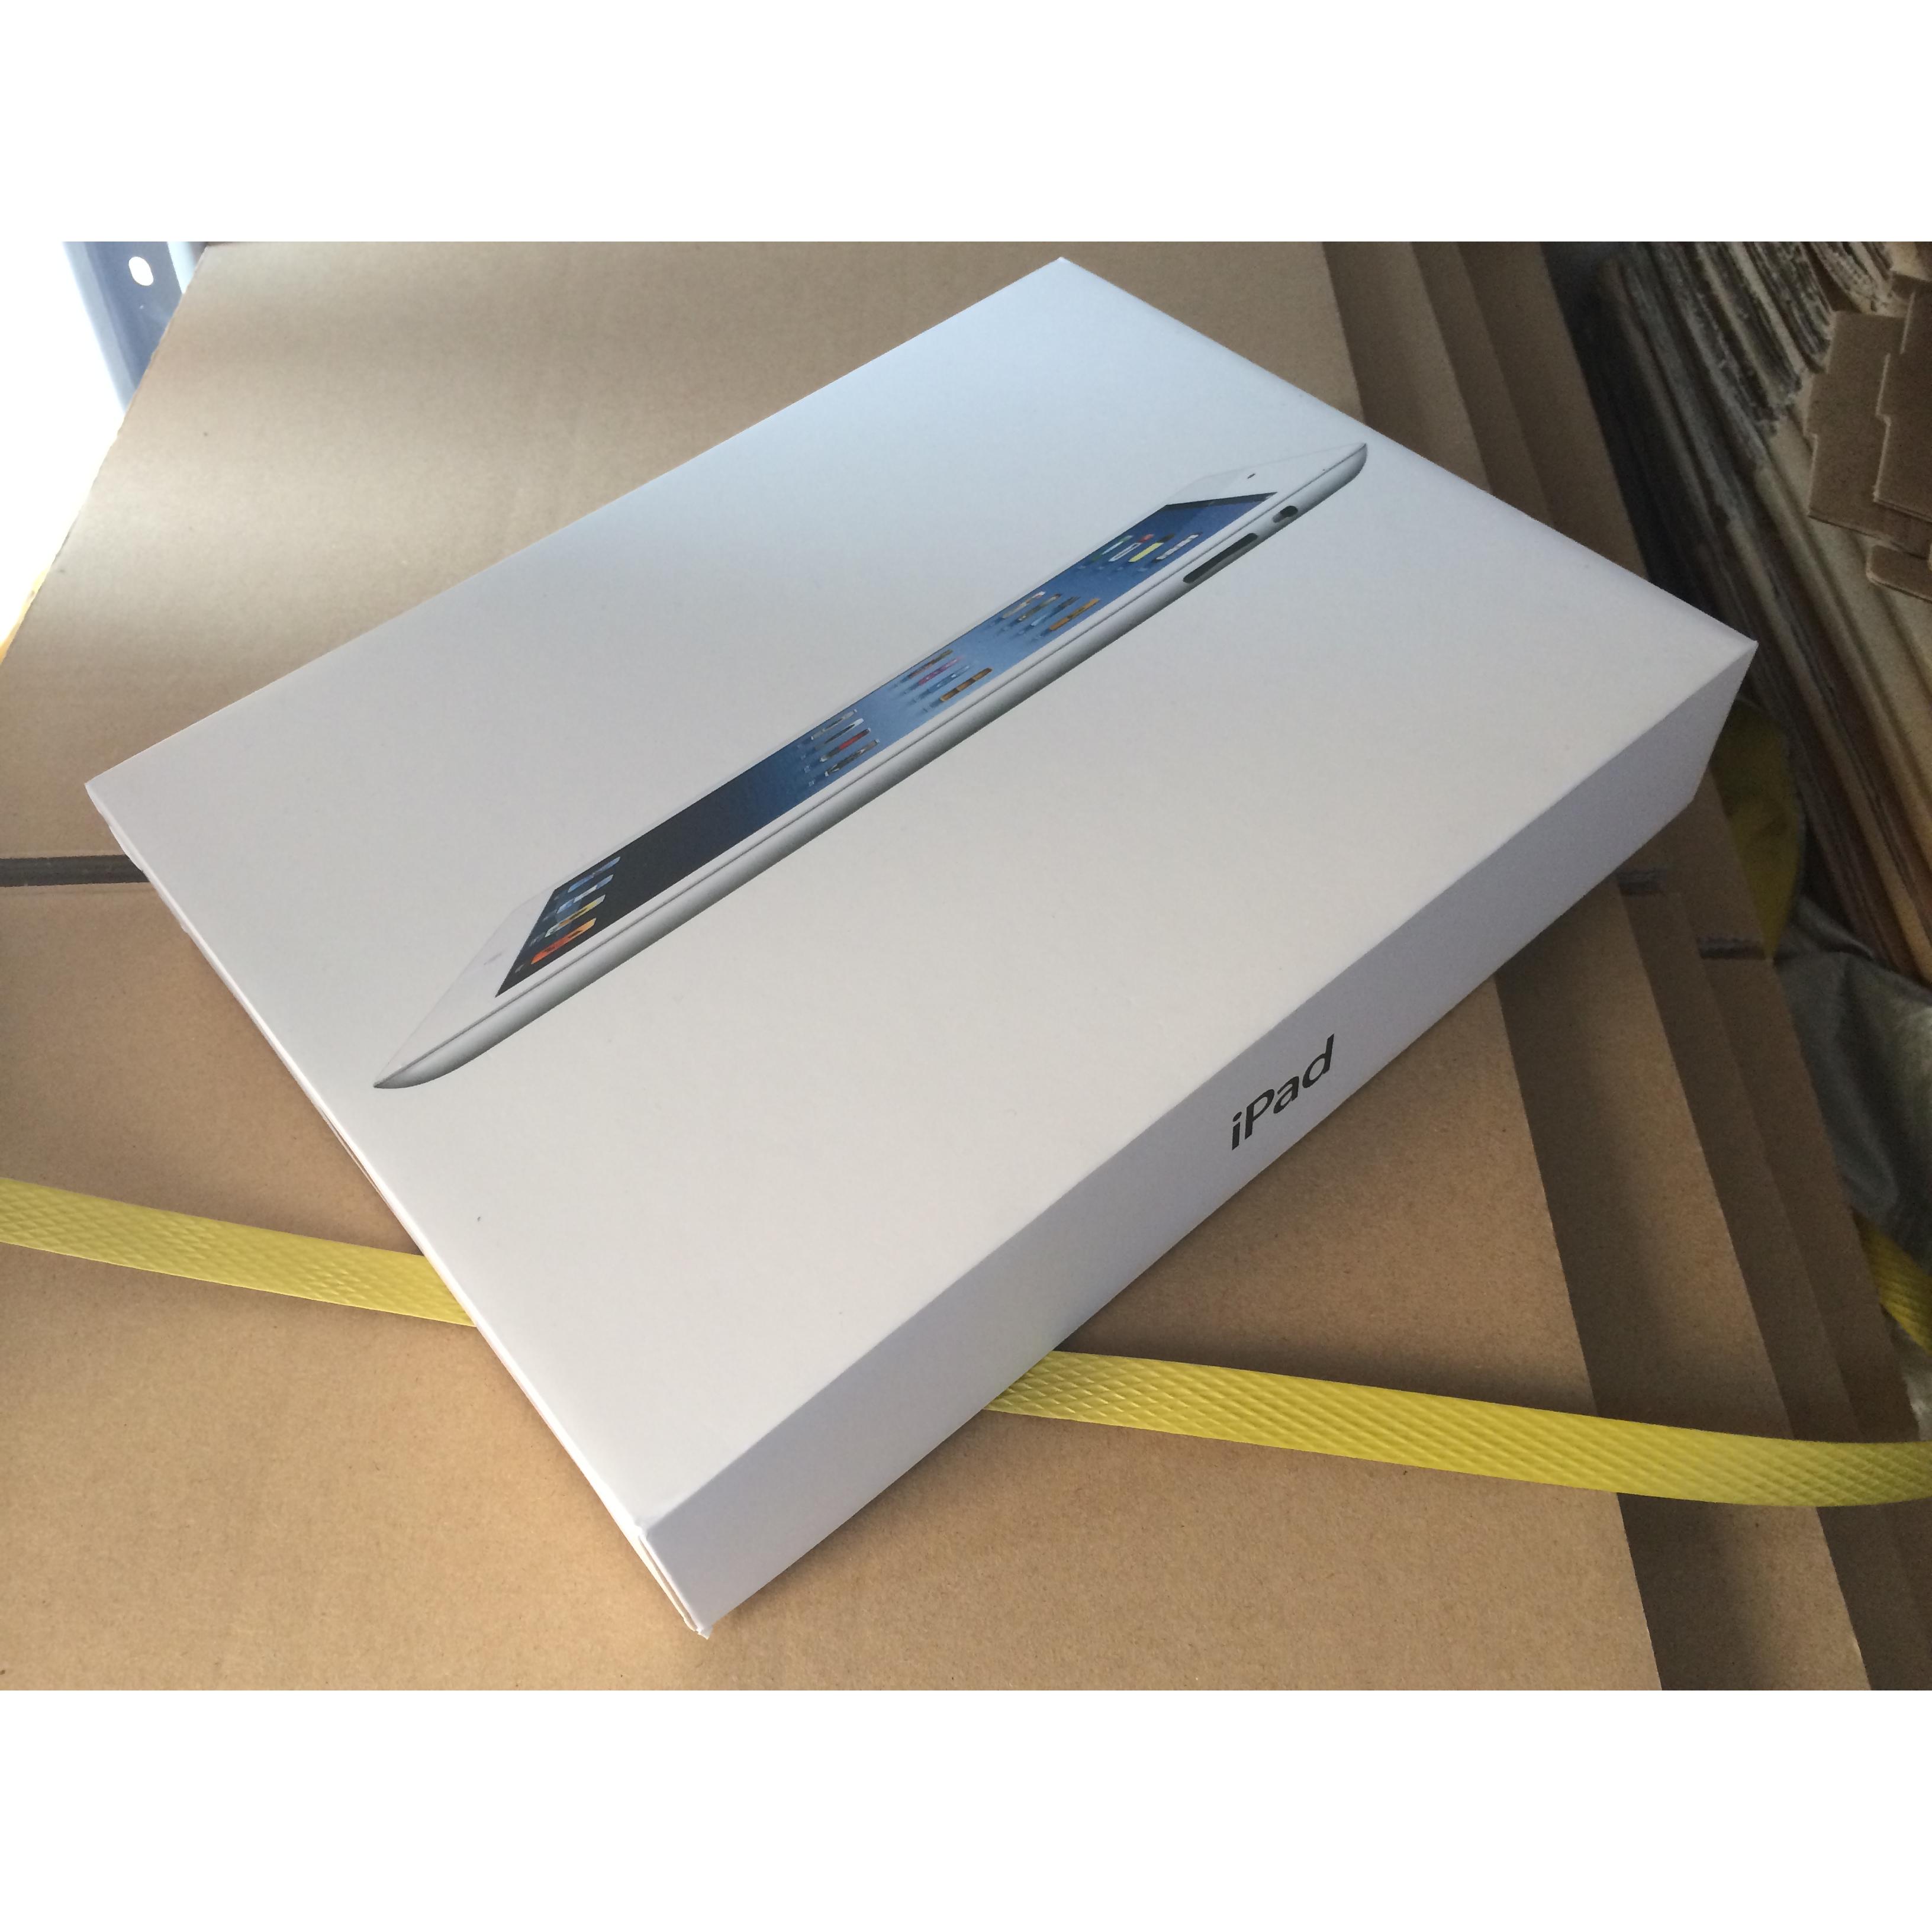 Apple iPad Wholesale Suppliers